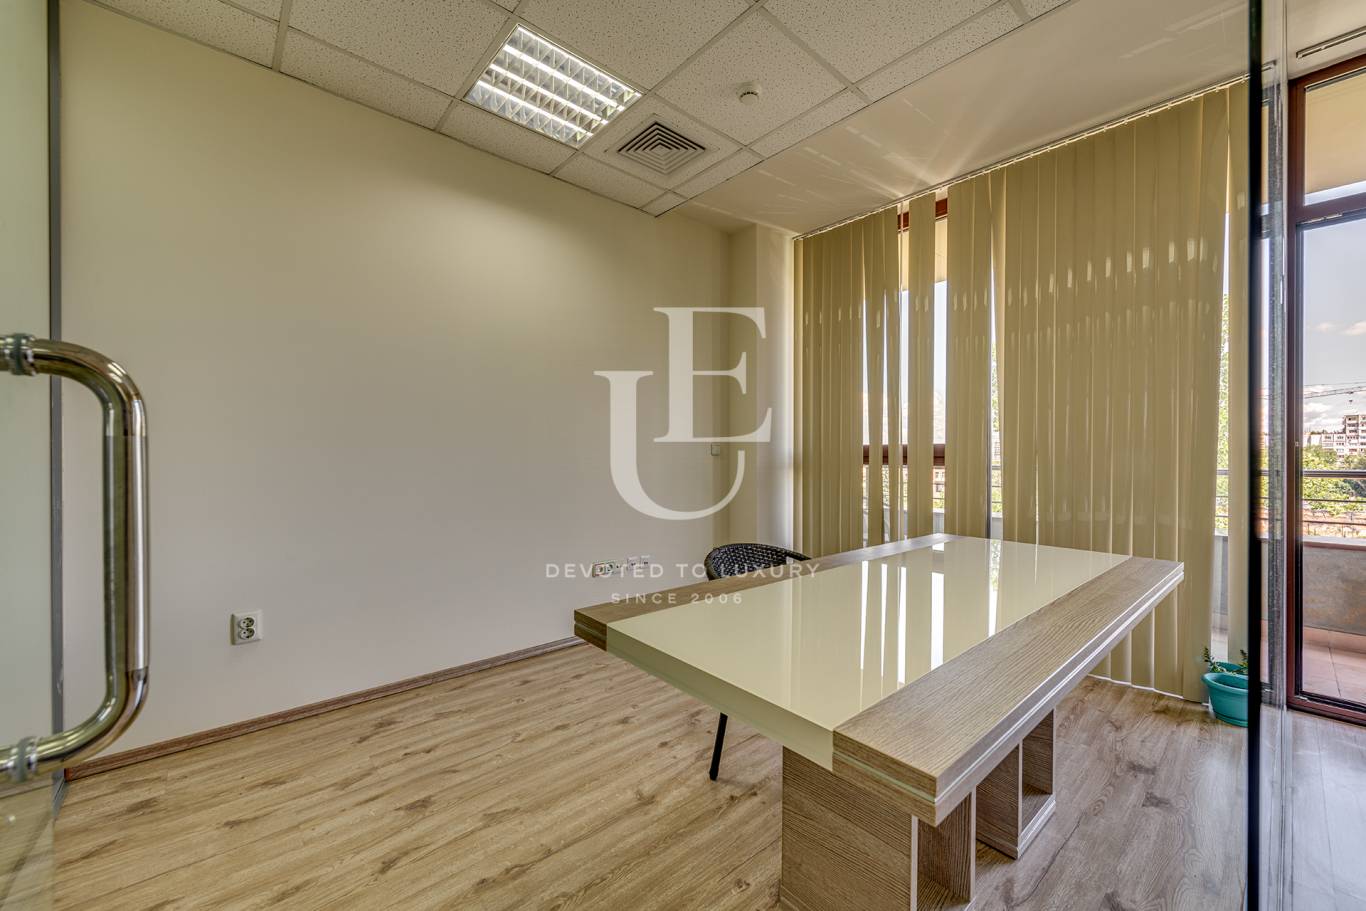 Офис под наем в София, Студентски град - код на имота: N17701 - image 2